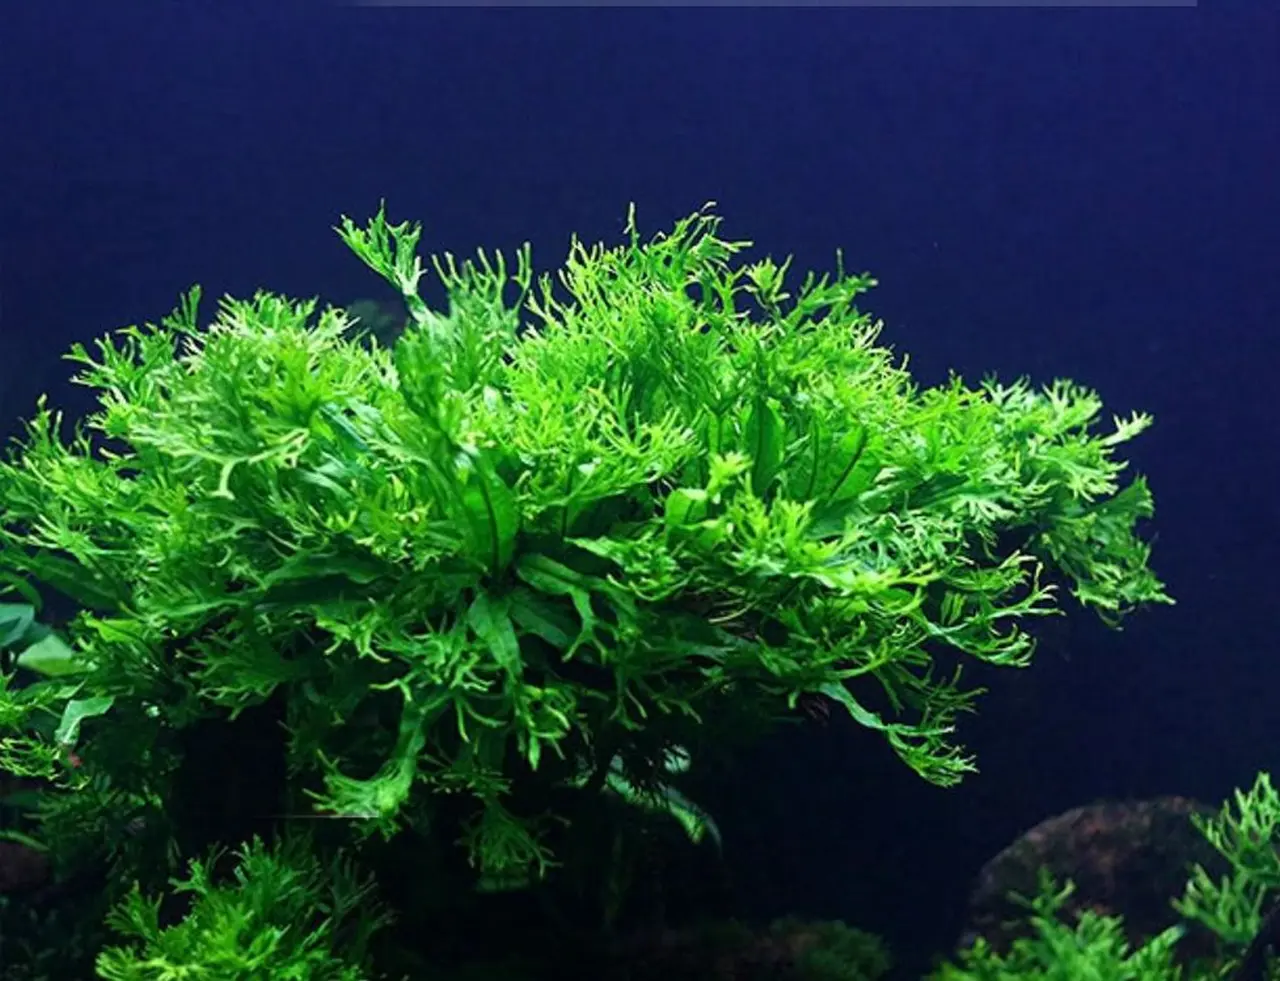 Aquatic-fern-plant-6